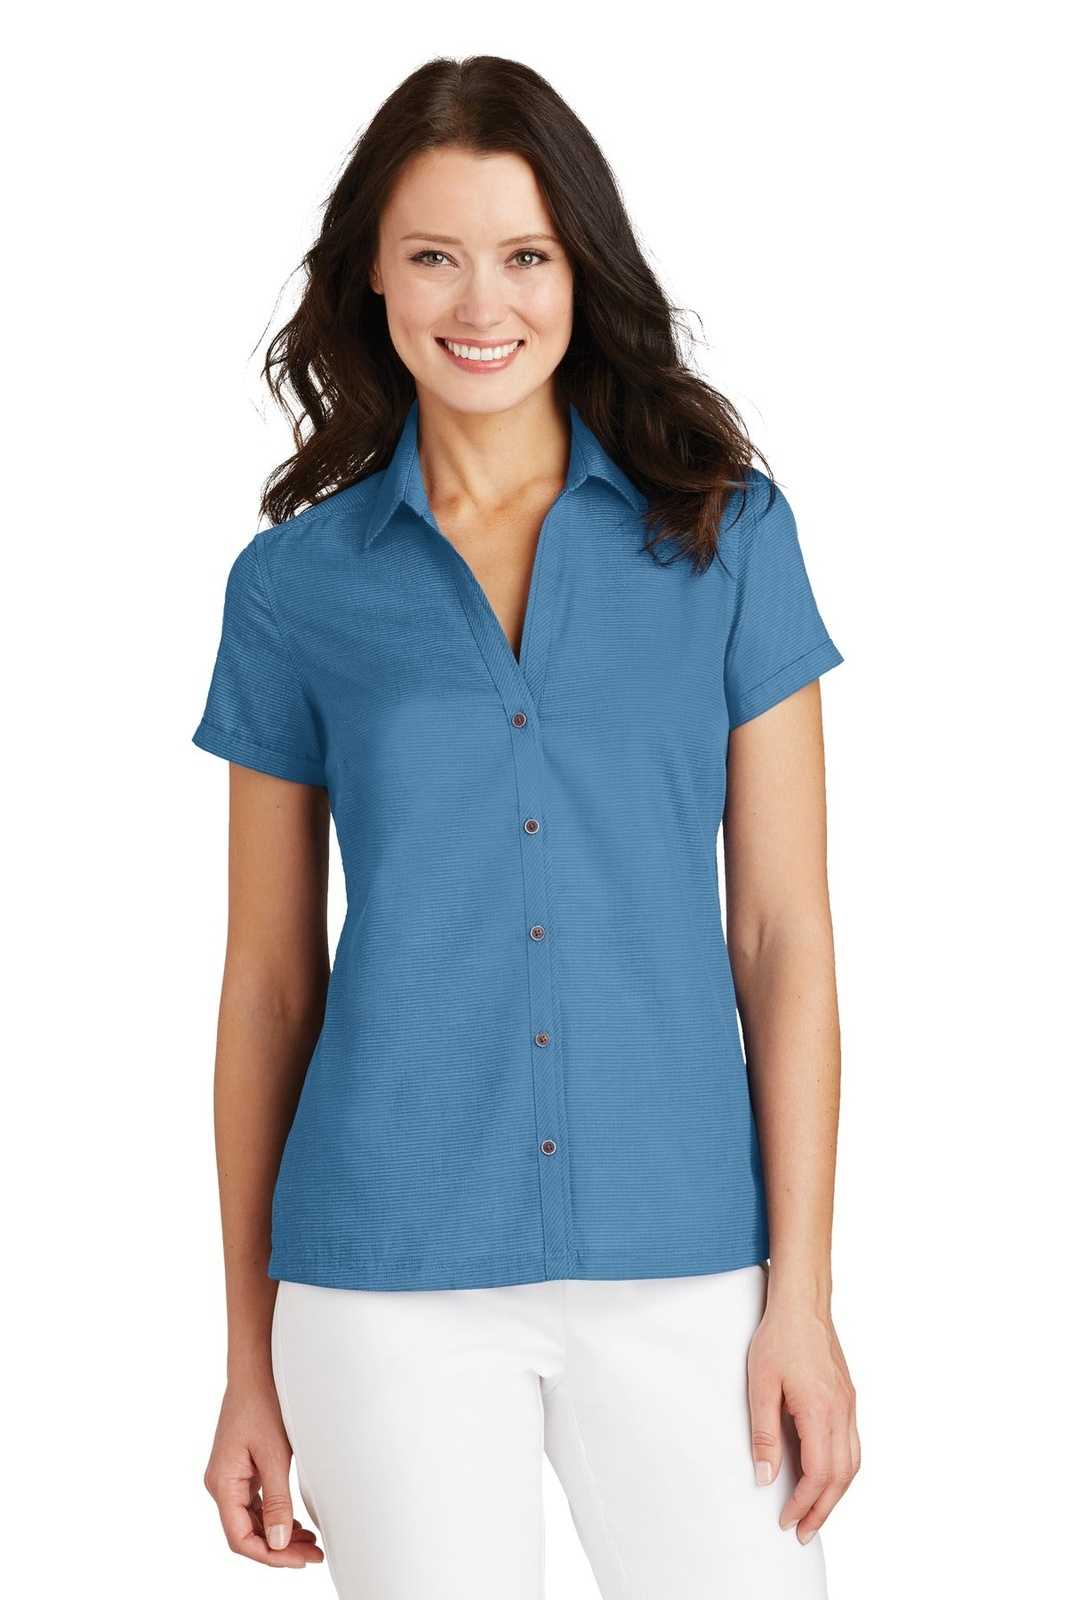 Port Authority L662 Ladies Textured Camp Shirt - Celadon - HIT a Double - 1